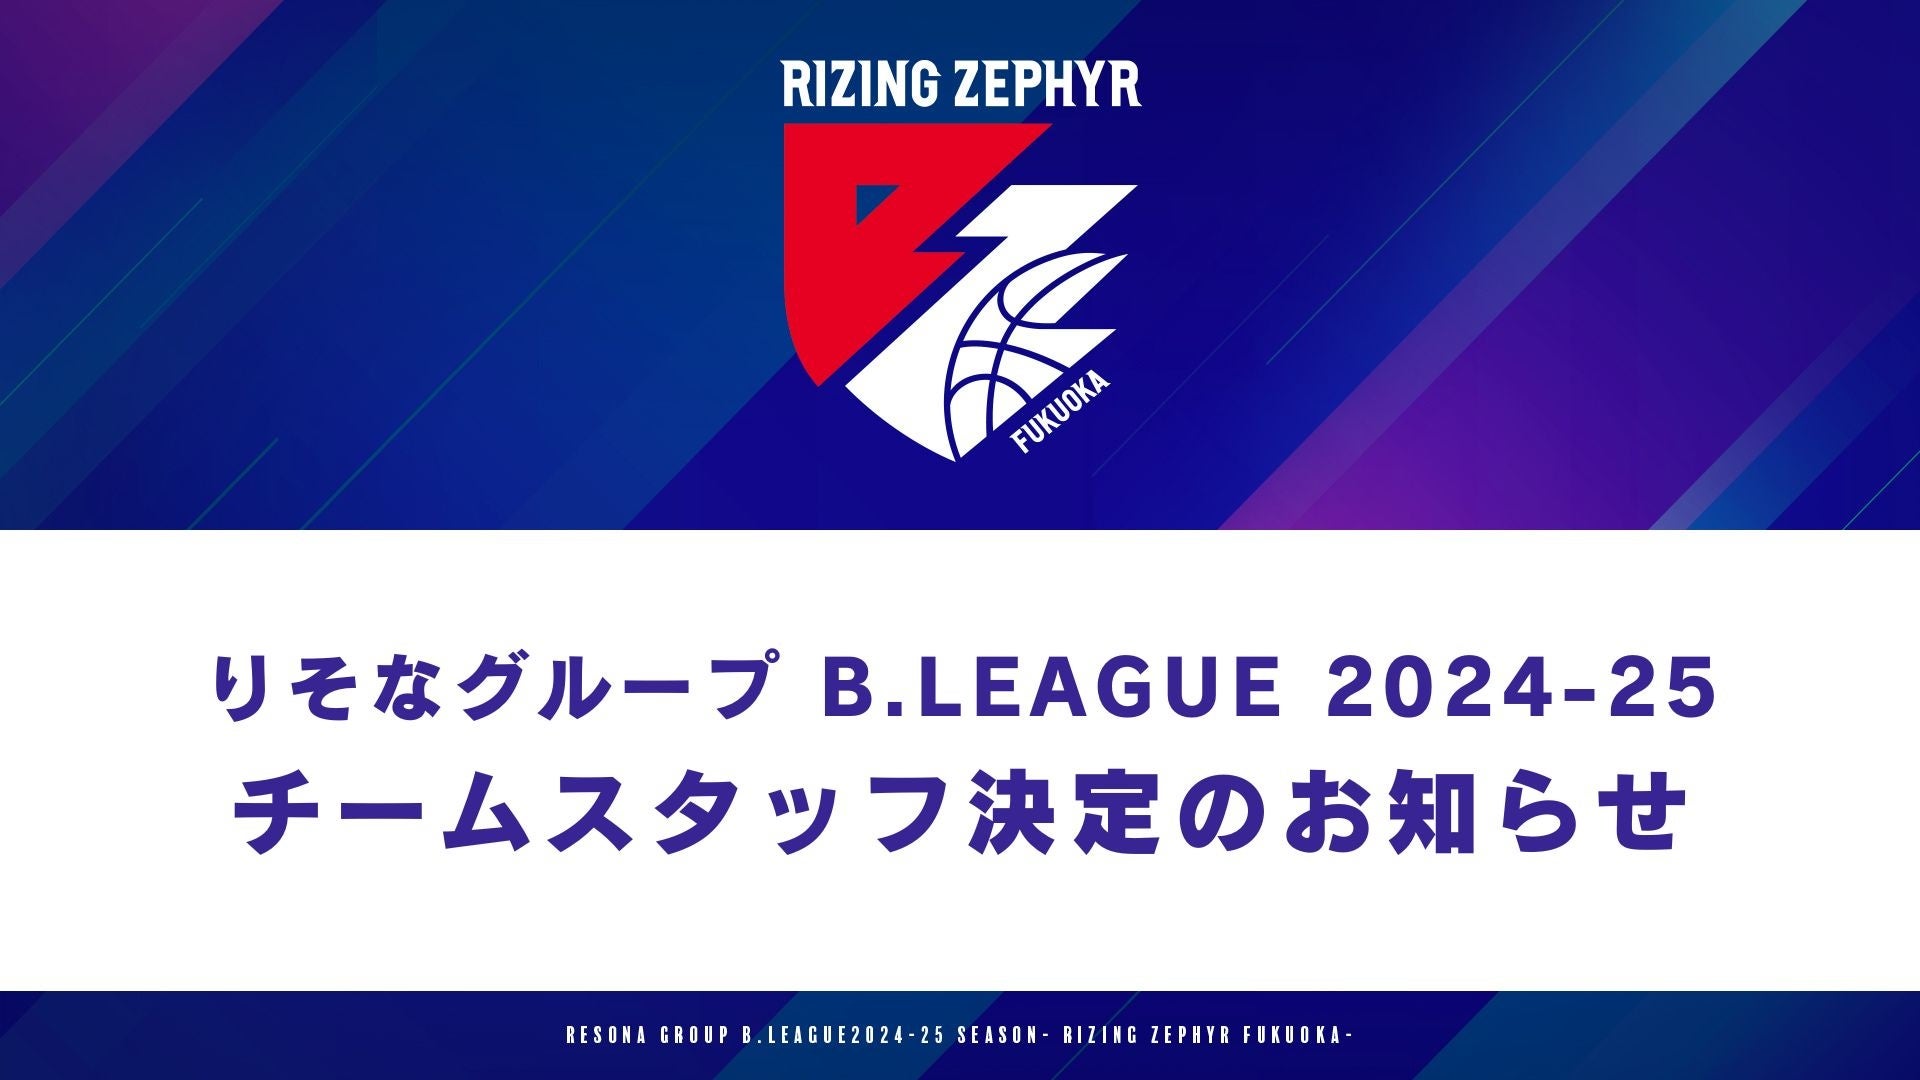 【りそなグループ B.LEAGUE 2024-25】ライジングゼファーフクオカ チームスタッフ決定のお知らせ